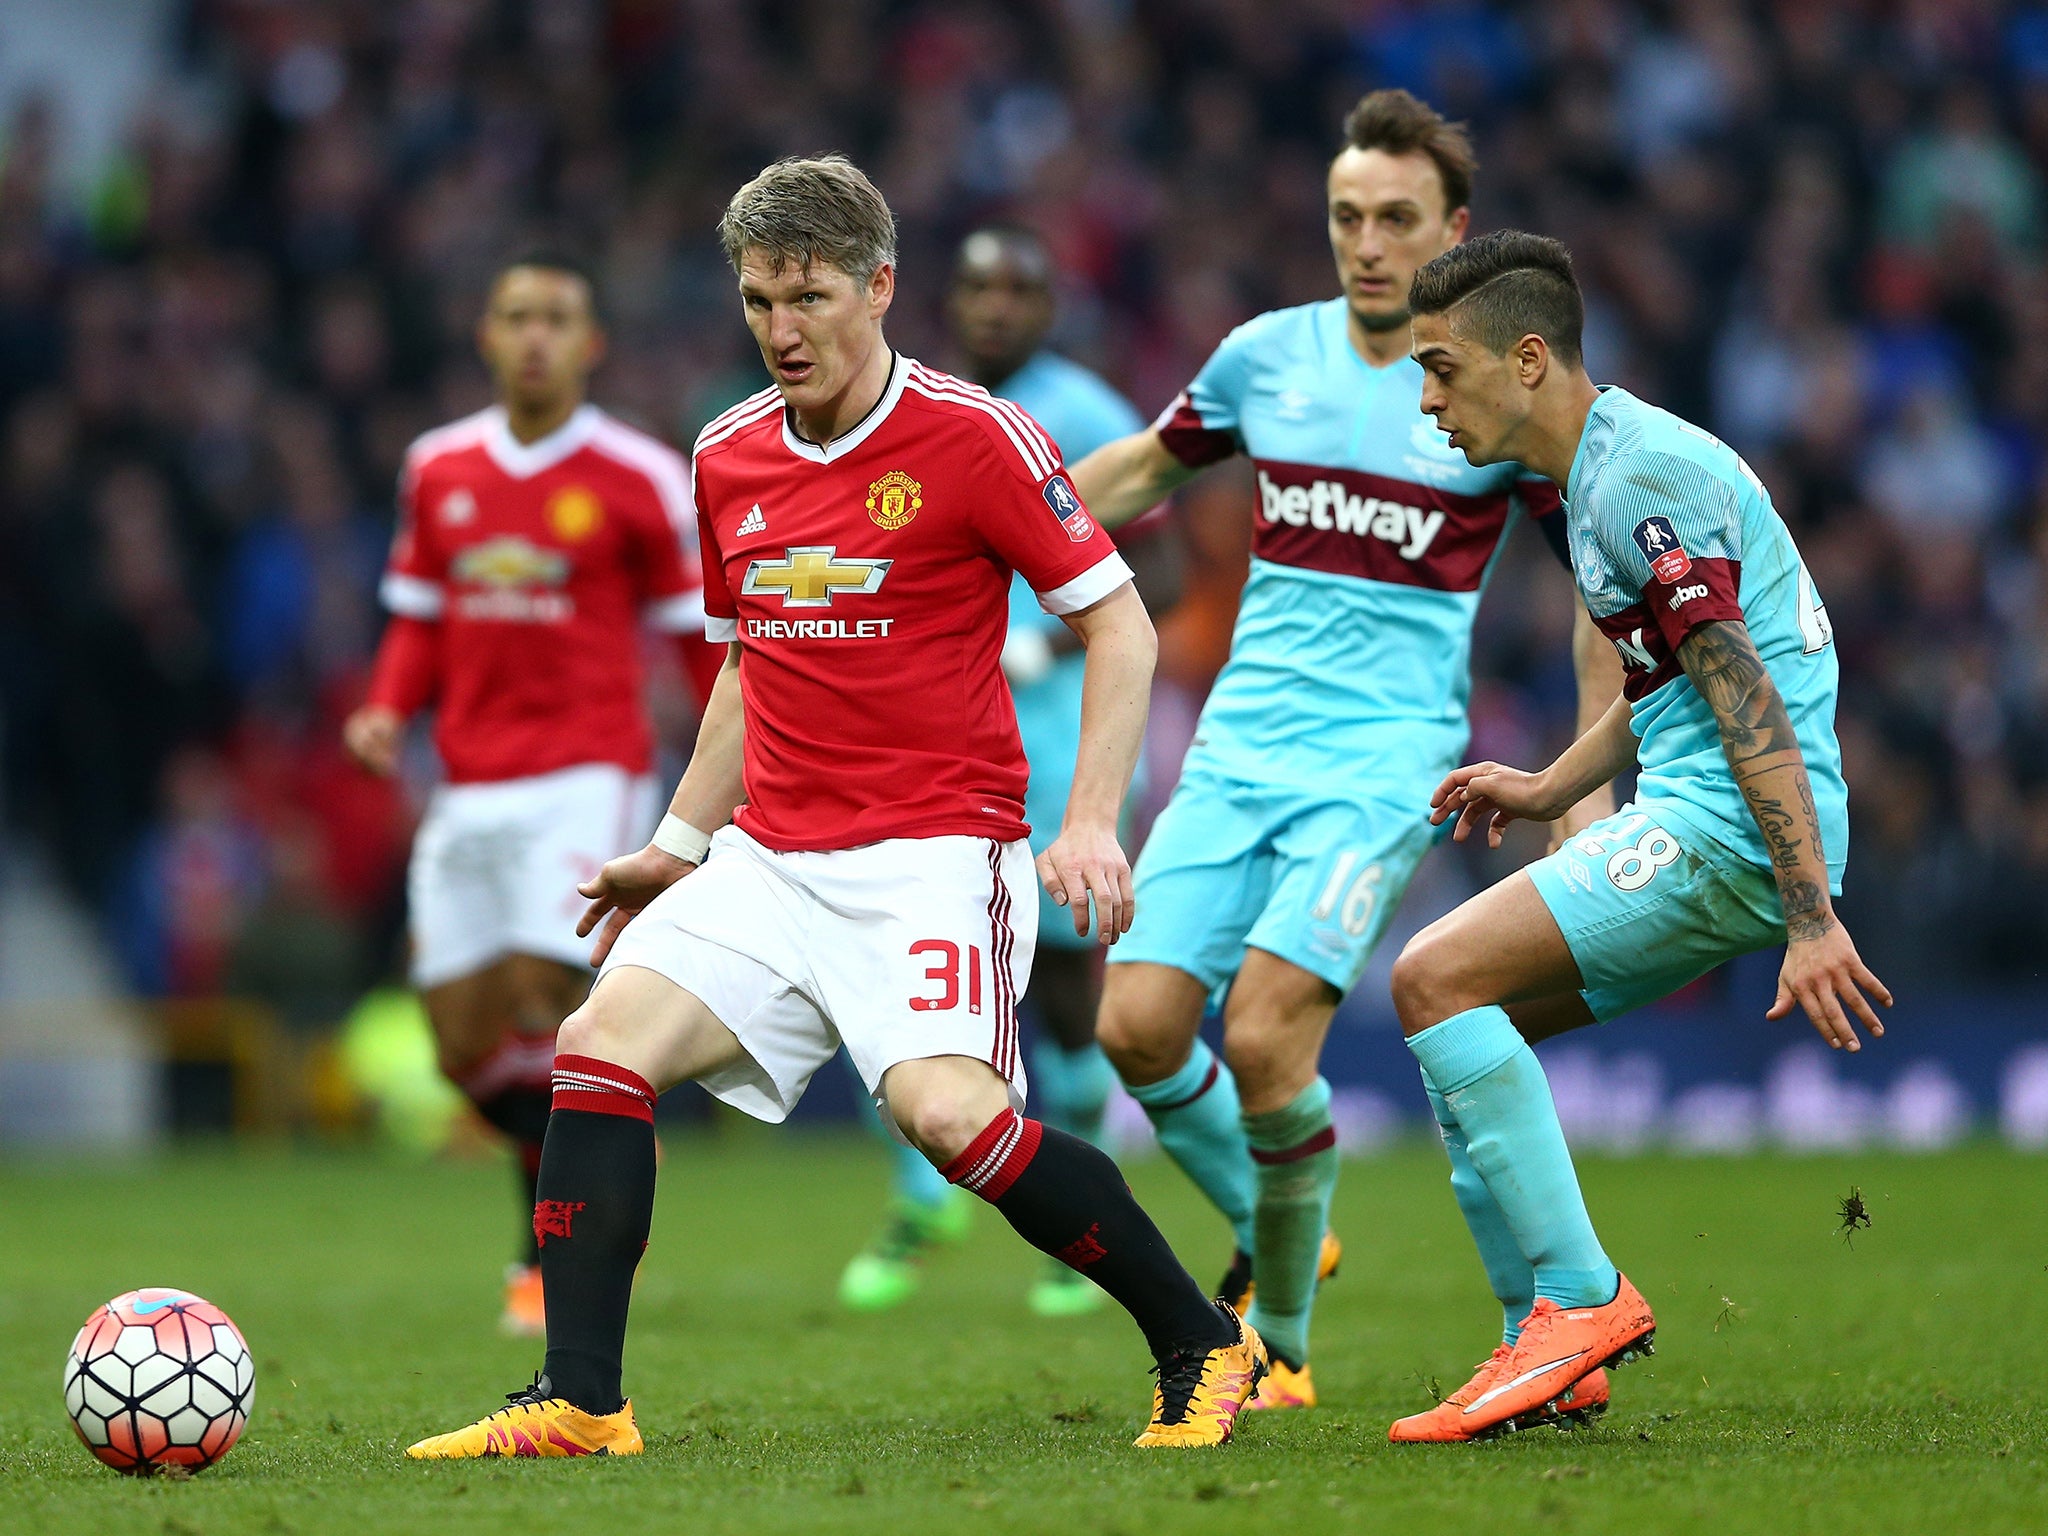 Bastian Schweinsteiger in action for Manchester United against West Ham